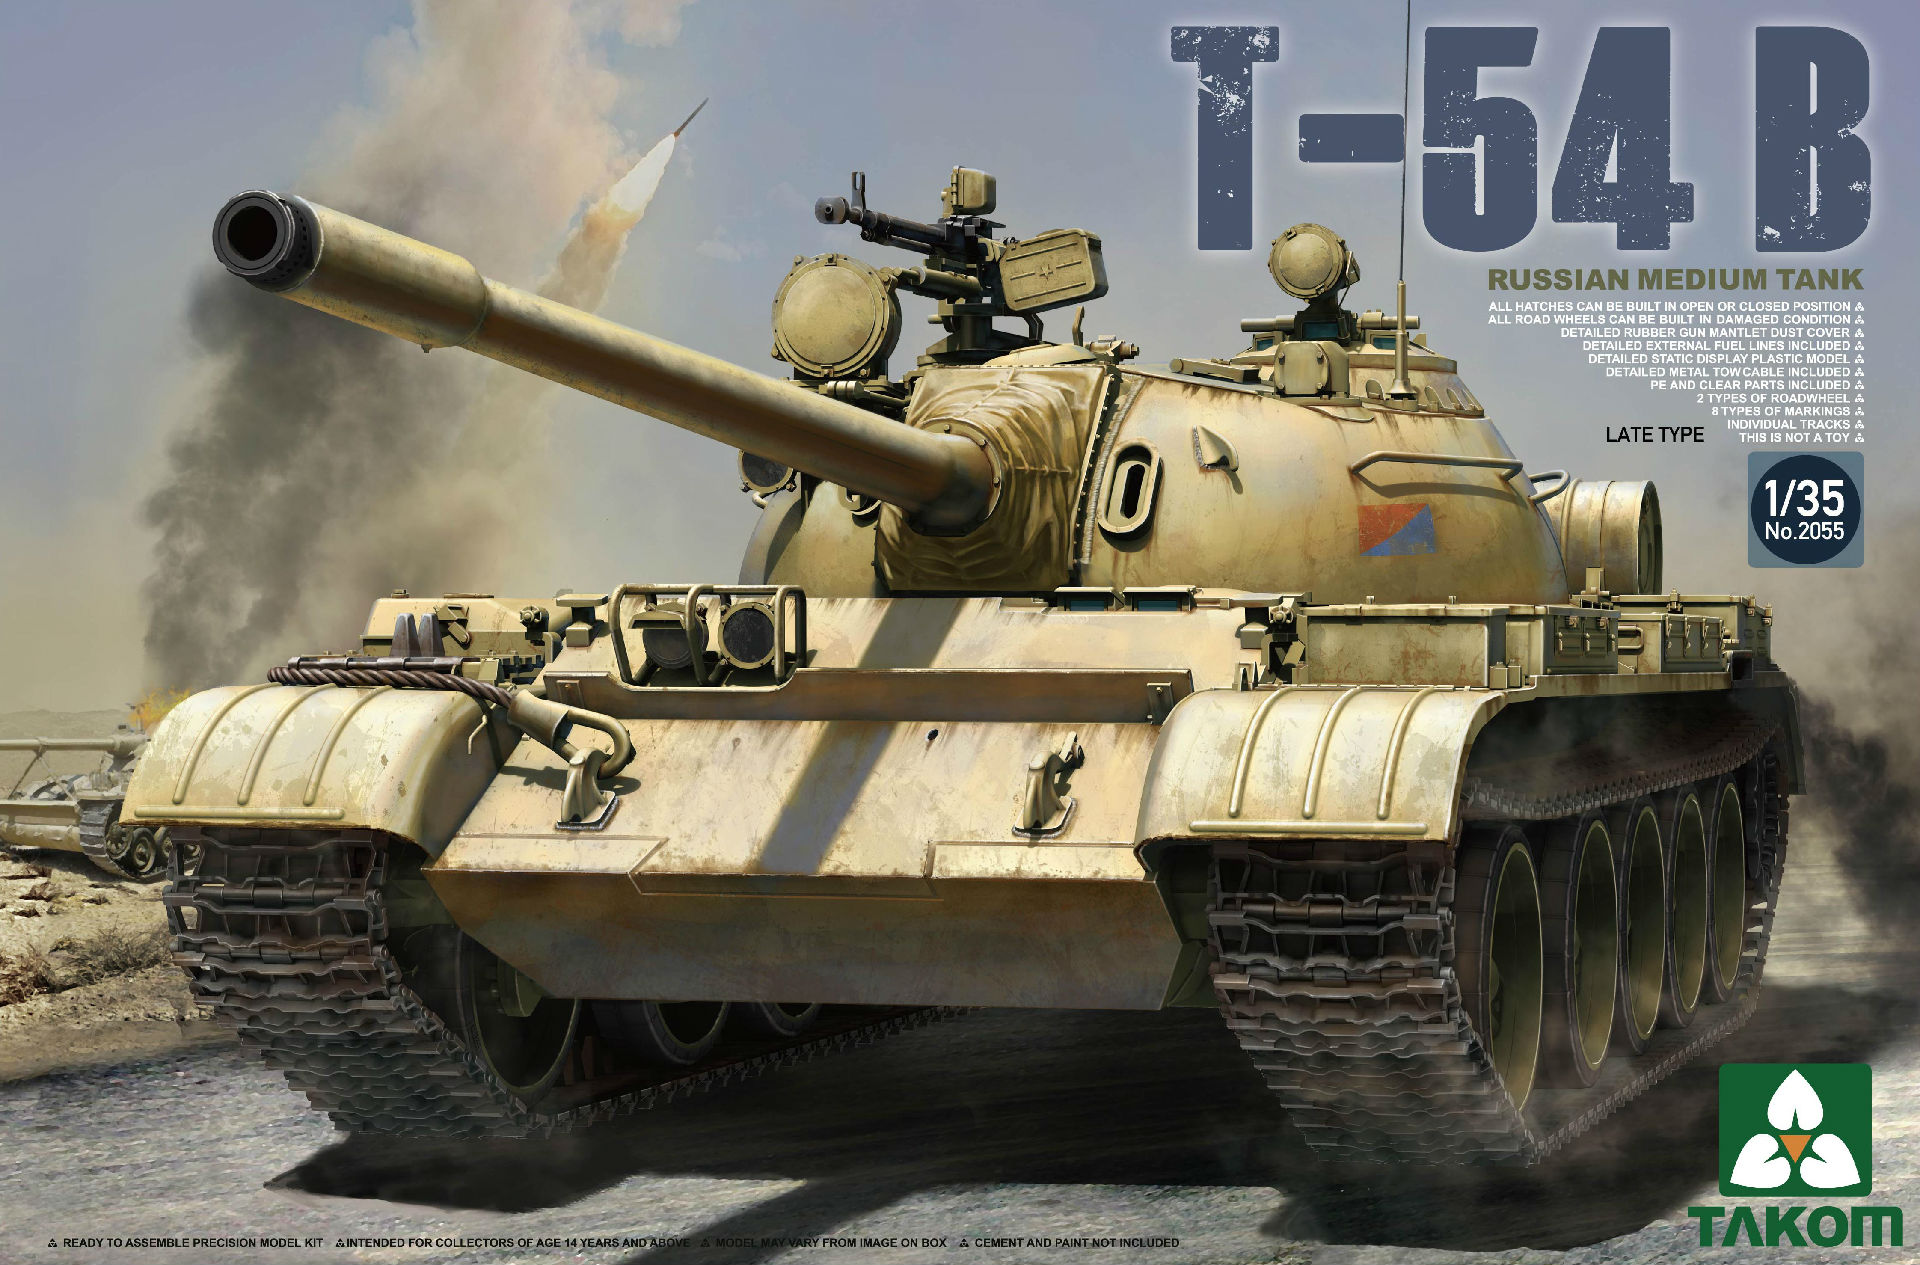 Russian Medium Tank T-54 B - Late Type